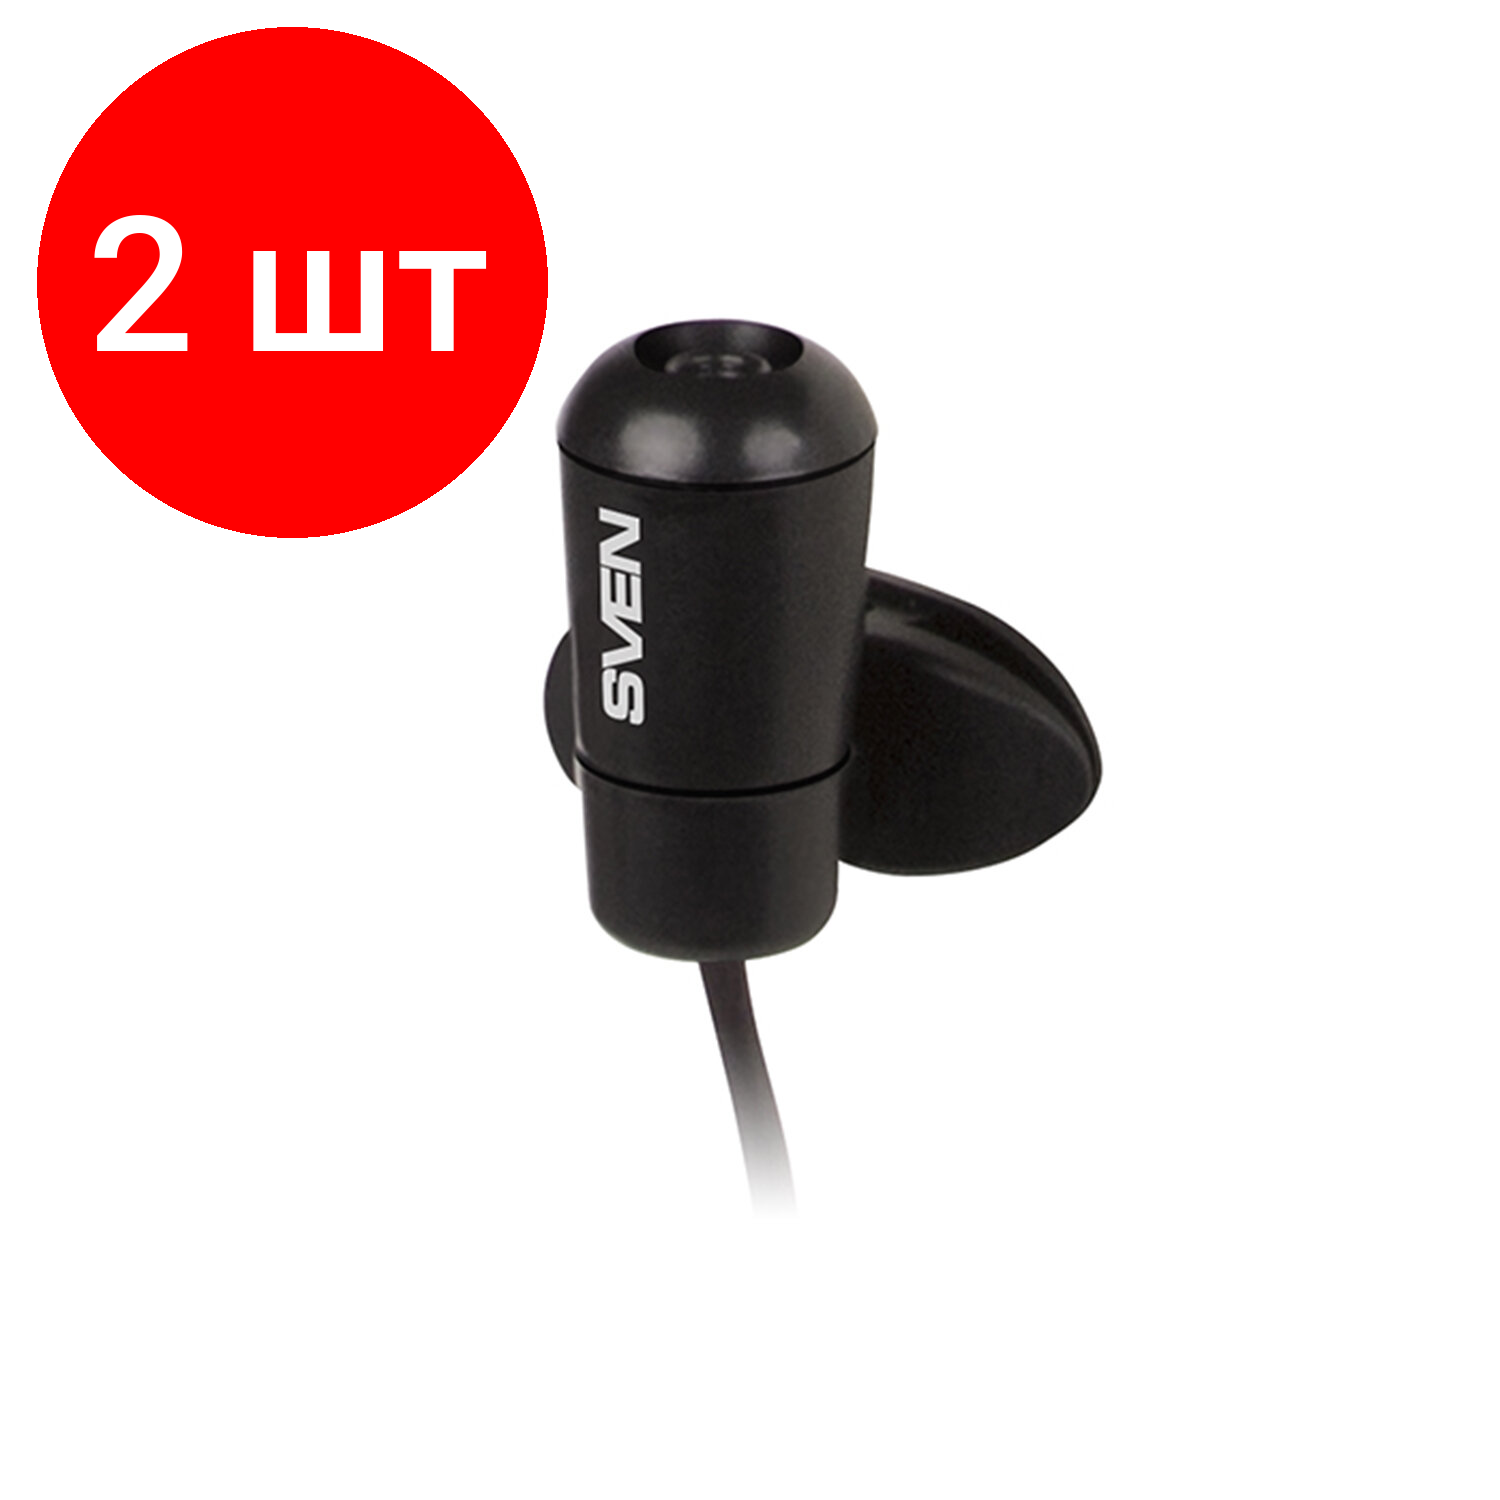 Комплект 2 шт, Микрофон-клипса SVEN MK-170, кабель 1.8 м, 58 дБ, пластик, черный, SV-014858